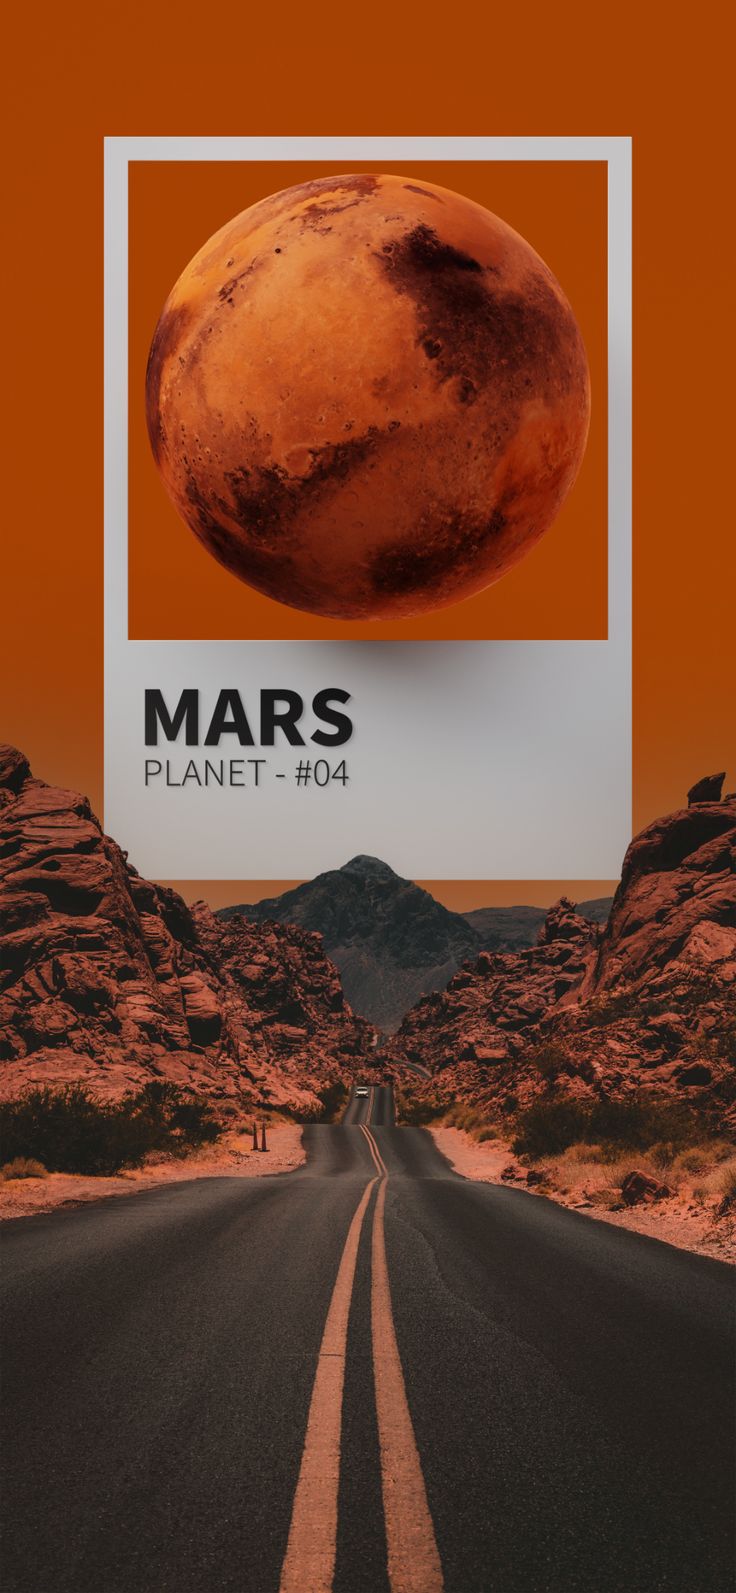 iphone wallpaper 4k in the horizon. Mars wallpaper, Space iphone wallpaper, iPhone wallpaper